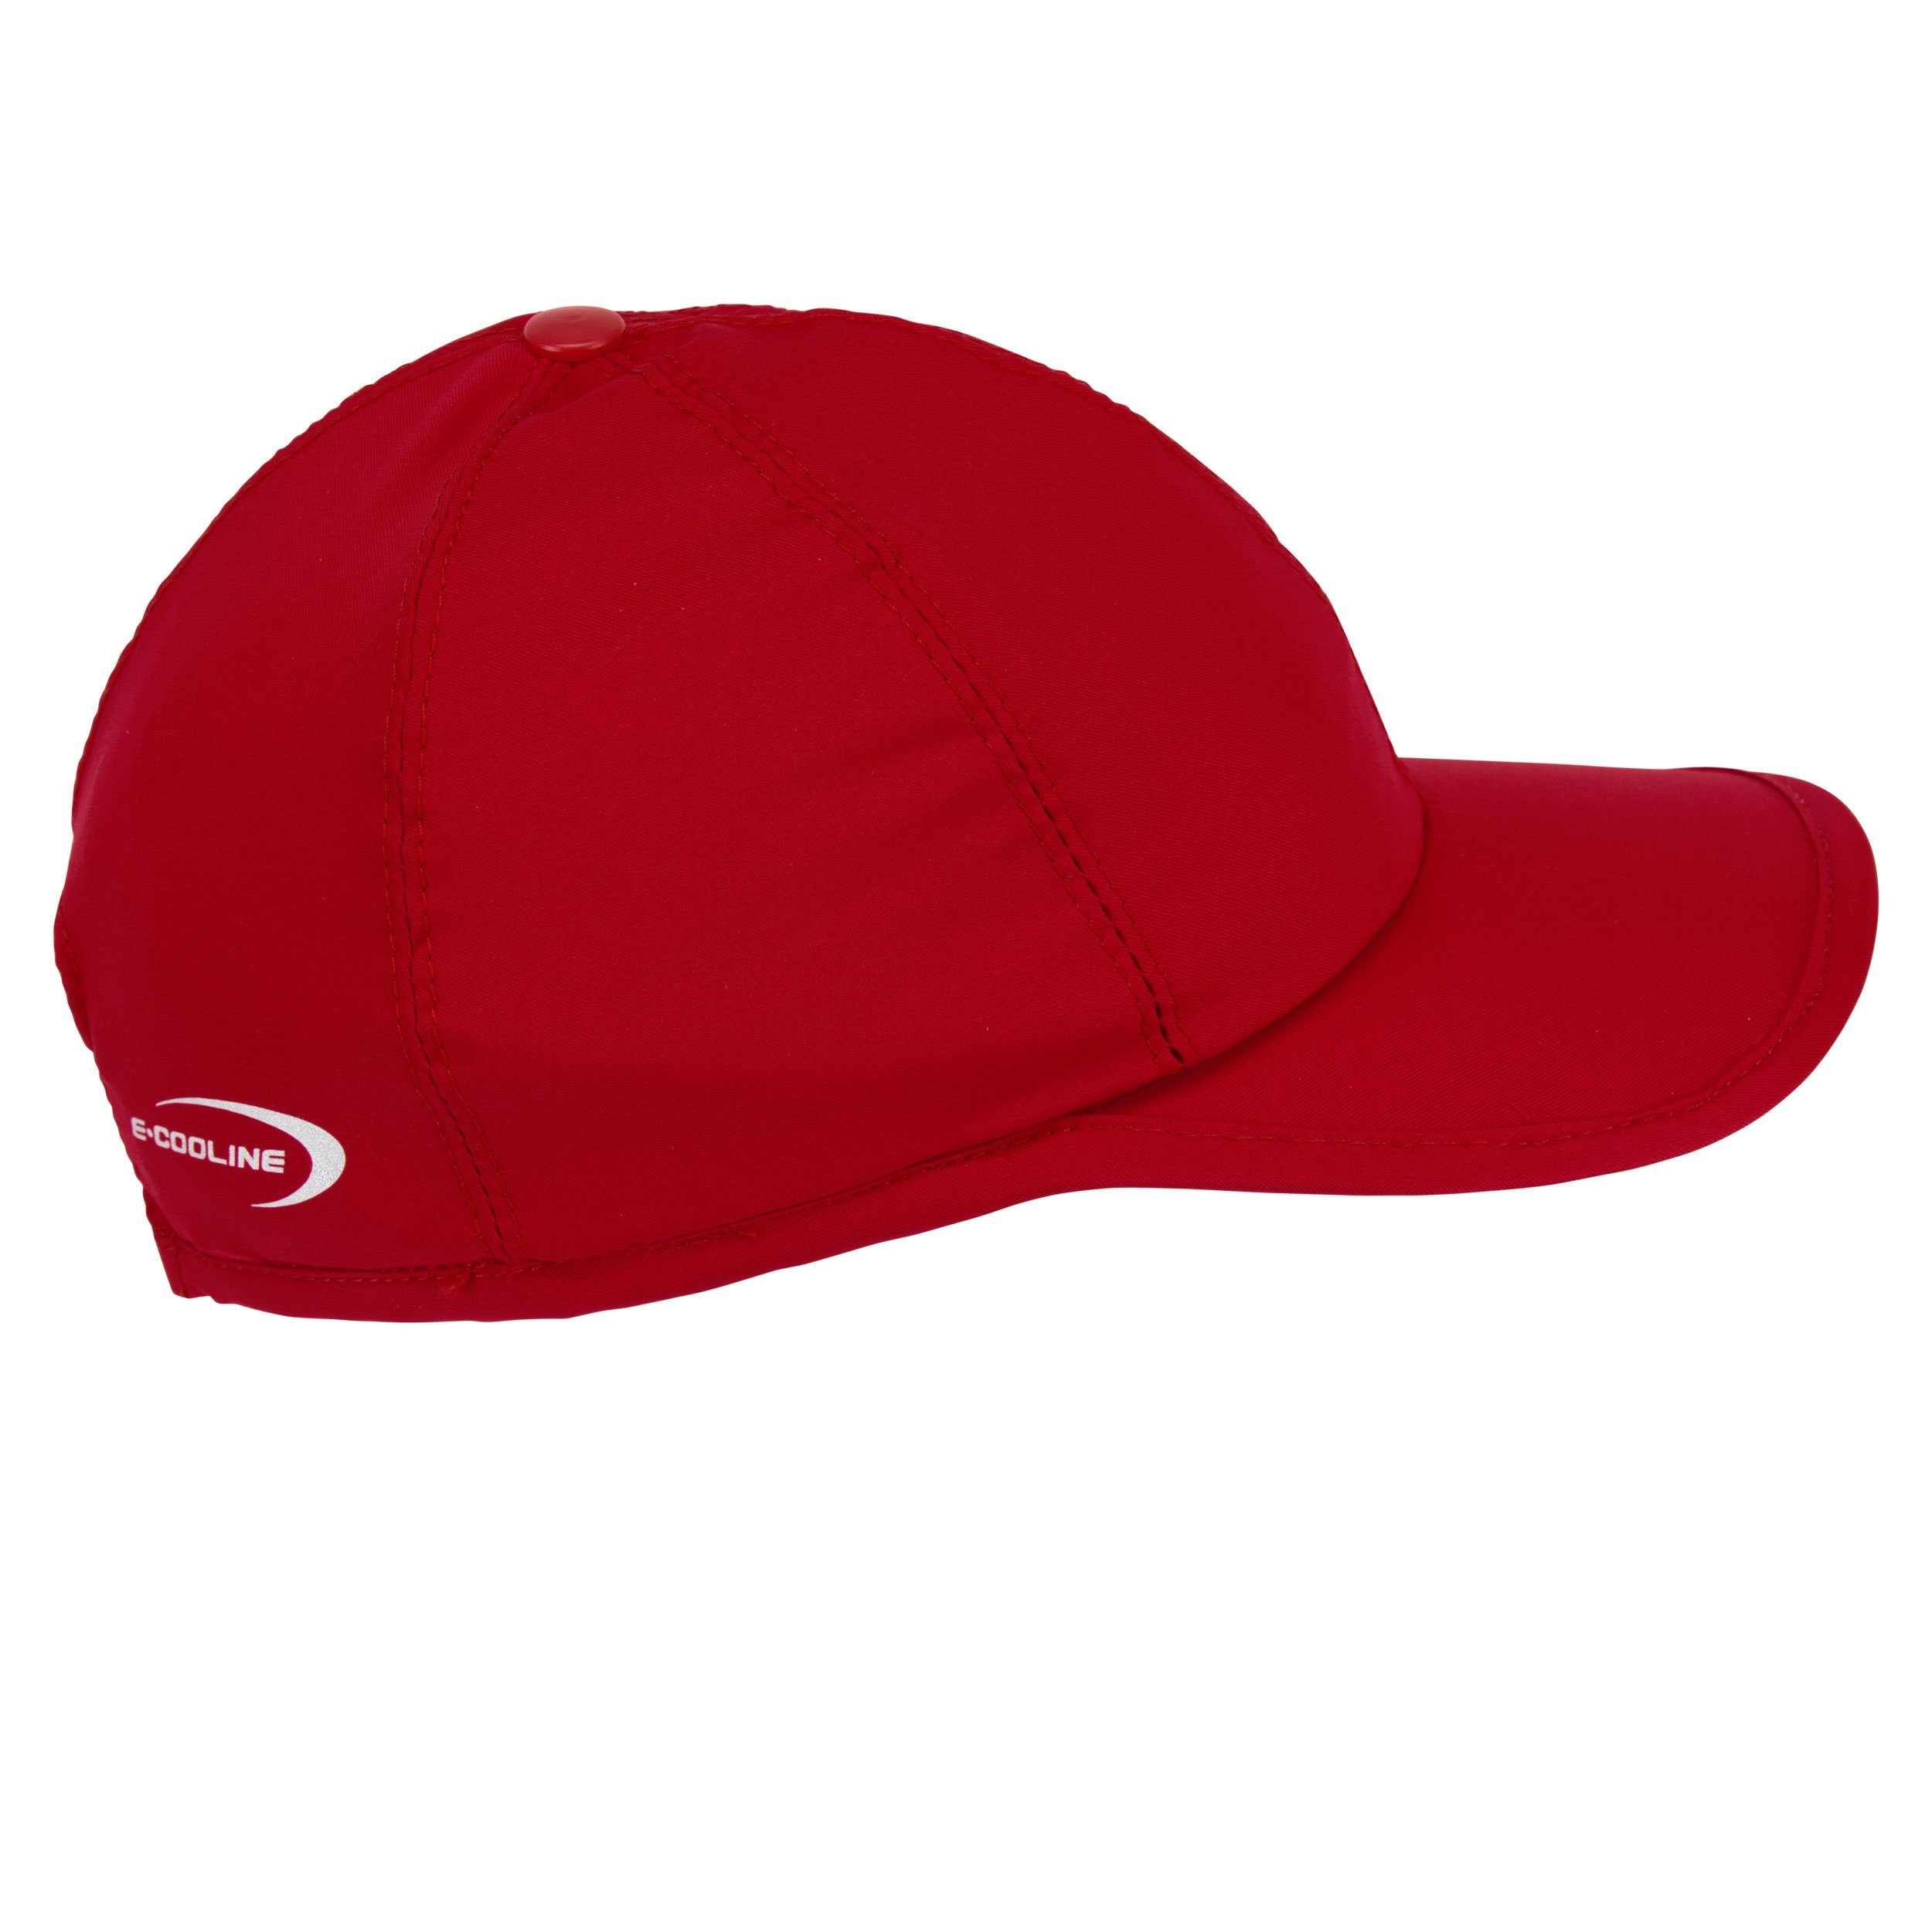 - Klimaanlage zum Aktivierung Baseball Anziehen durch Wasser mit Rot E.COOLINE Mütze aktiv - kühlende Kühlung Cap